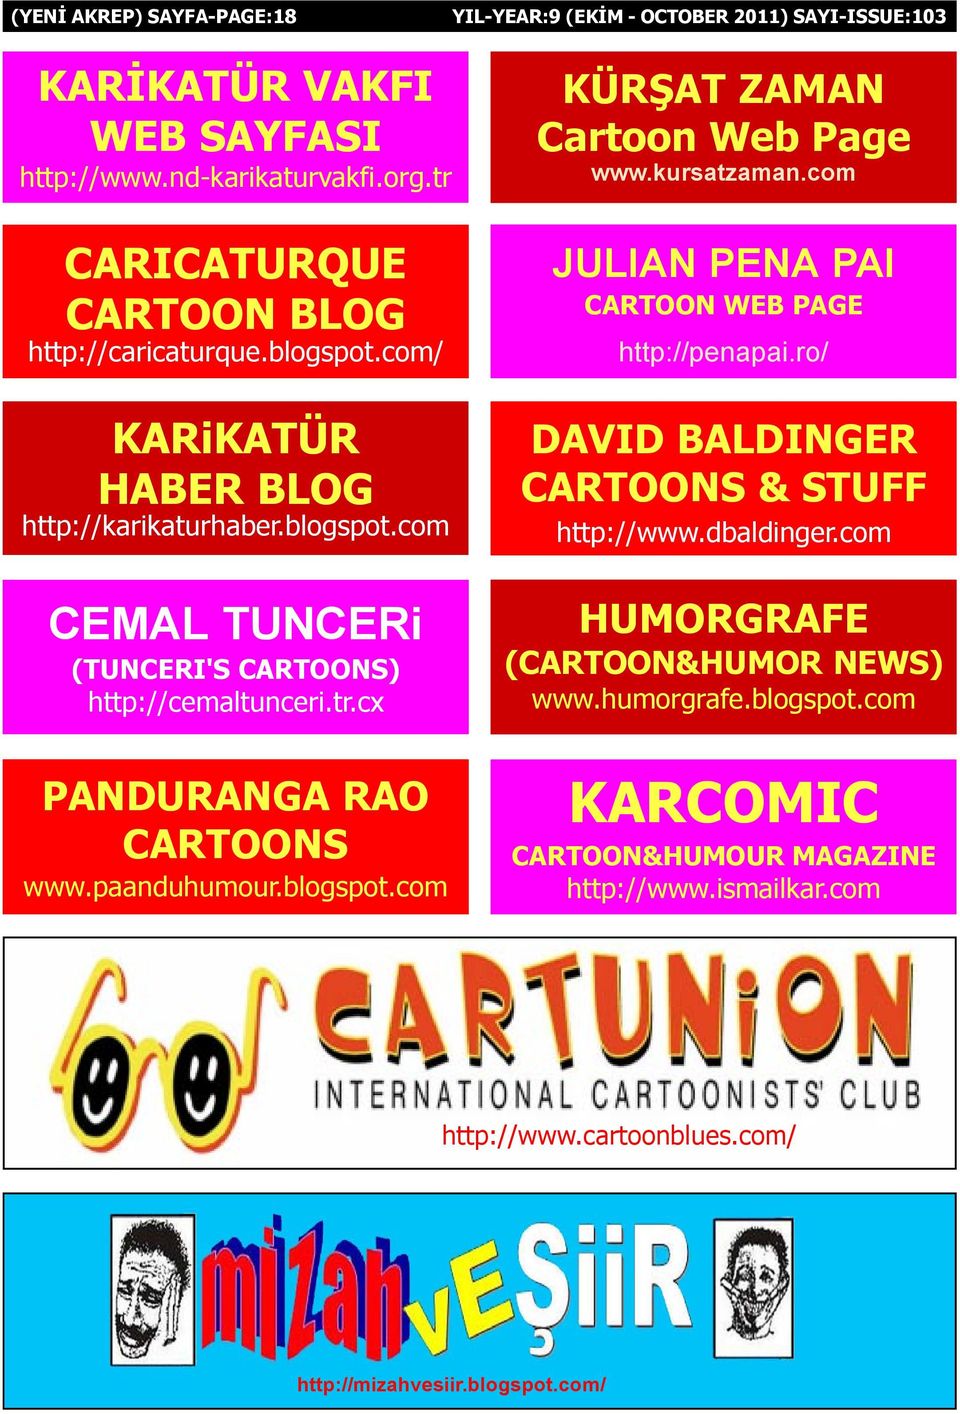 com CEMAL TUNCERi (TUNCERI'S CARTOONS) http://cemaltunceri.tr.cx PANDURANGA RAO CARTOONS www.paanduhumour.blogspot.com DAVID BALDINGER CARTOONS & STUFF http://www.